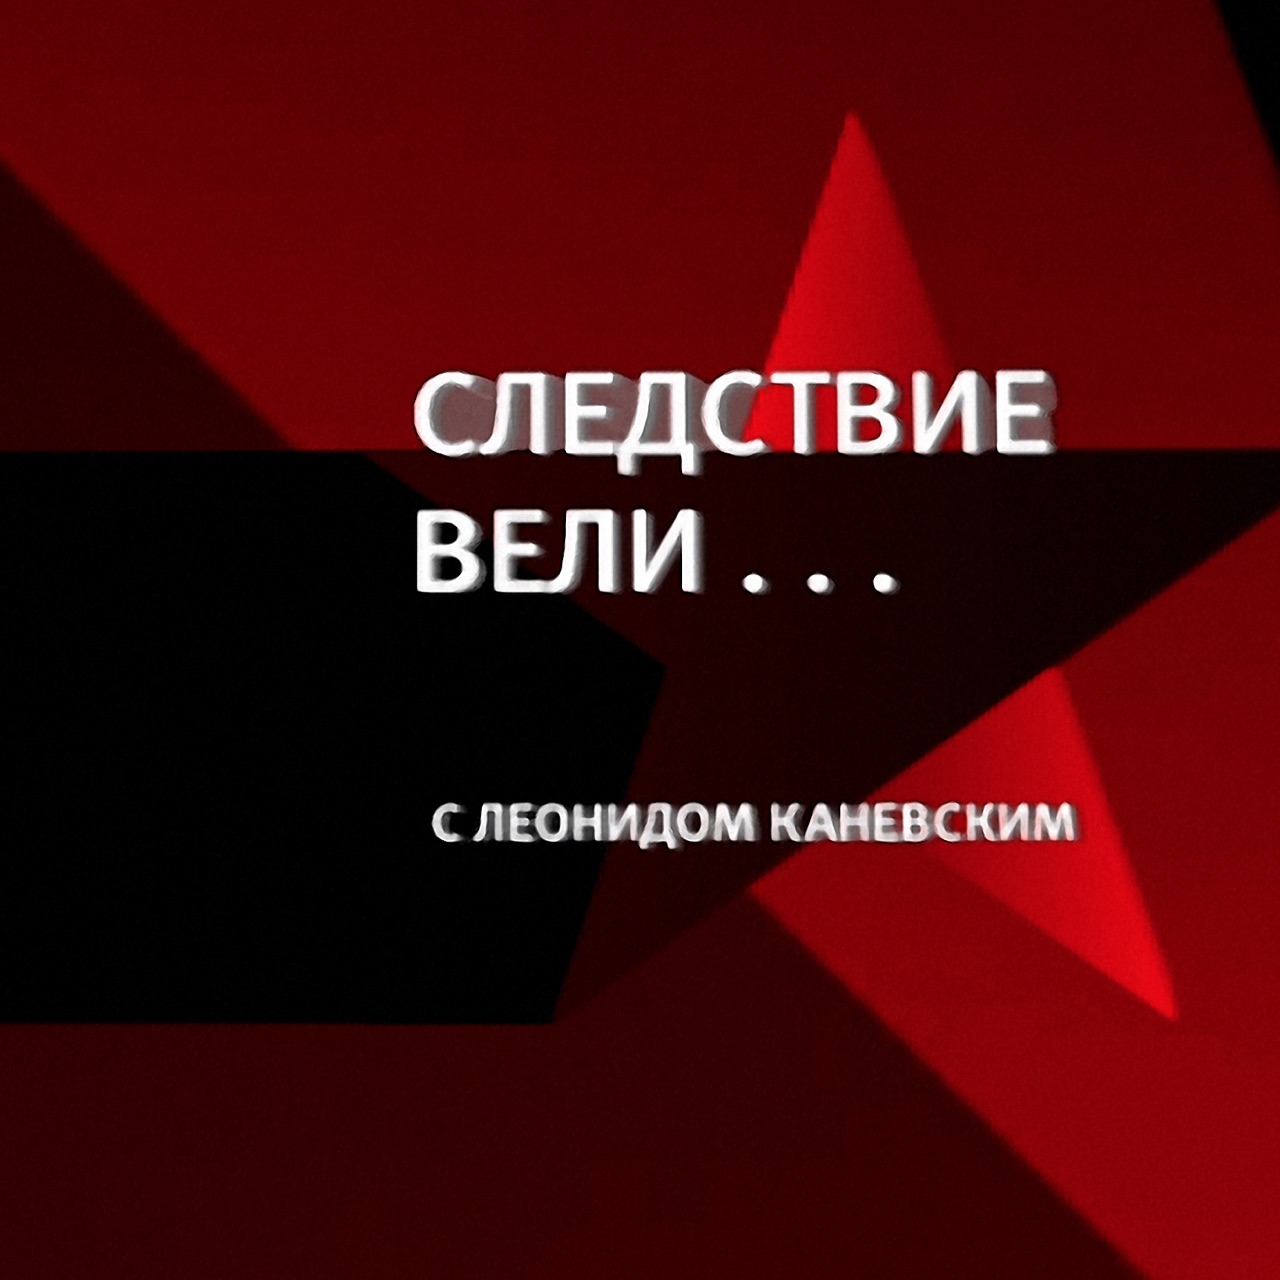 Следствие вели с Леонидом Каневским логотип. Программа следствие вели с Леонидом Каневским.